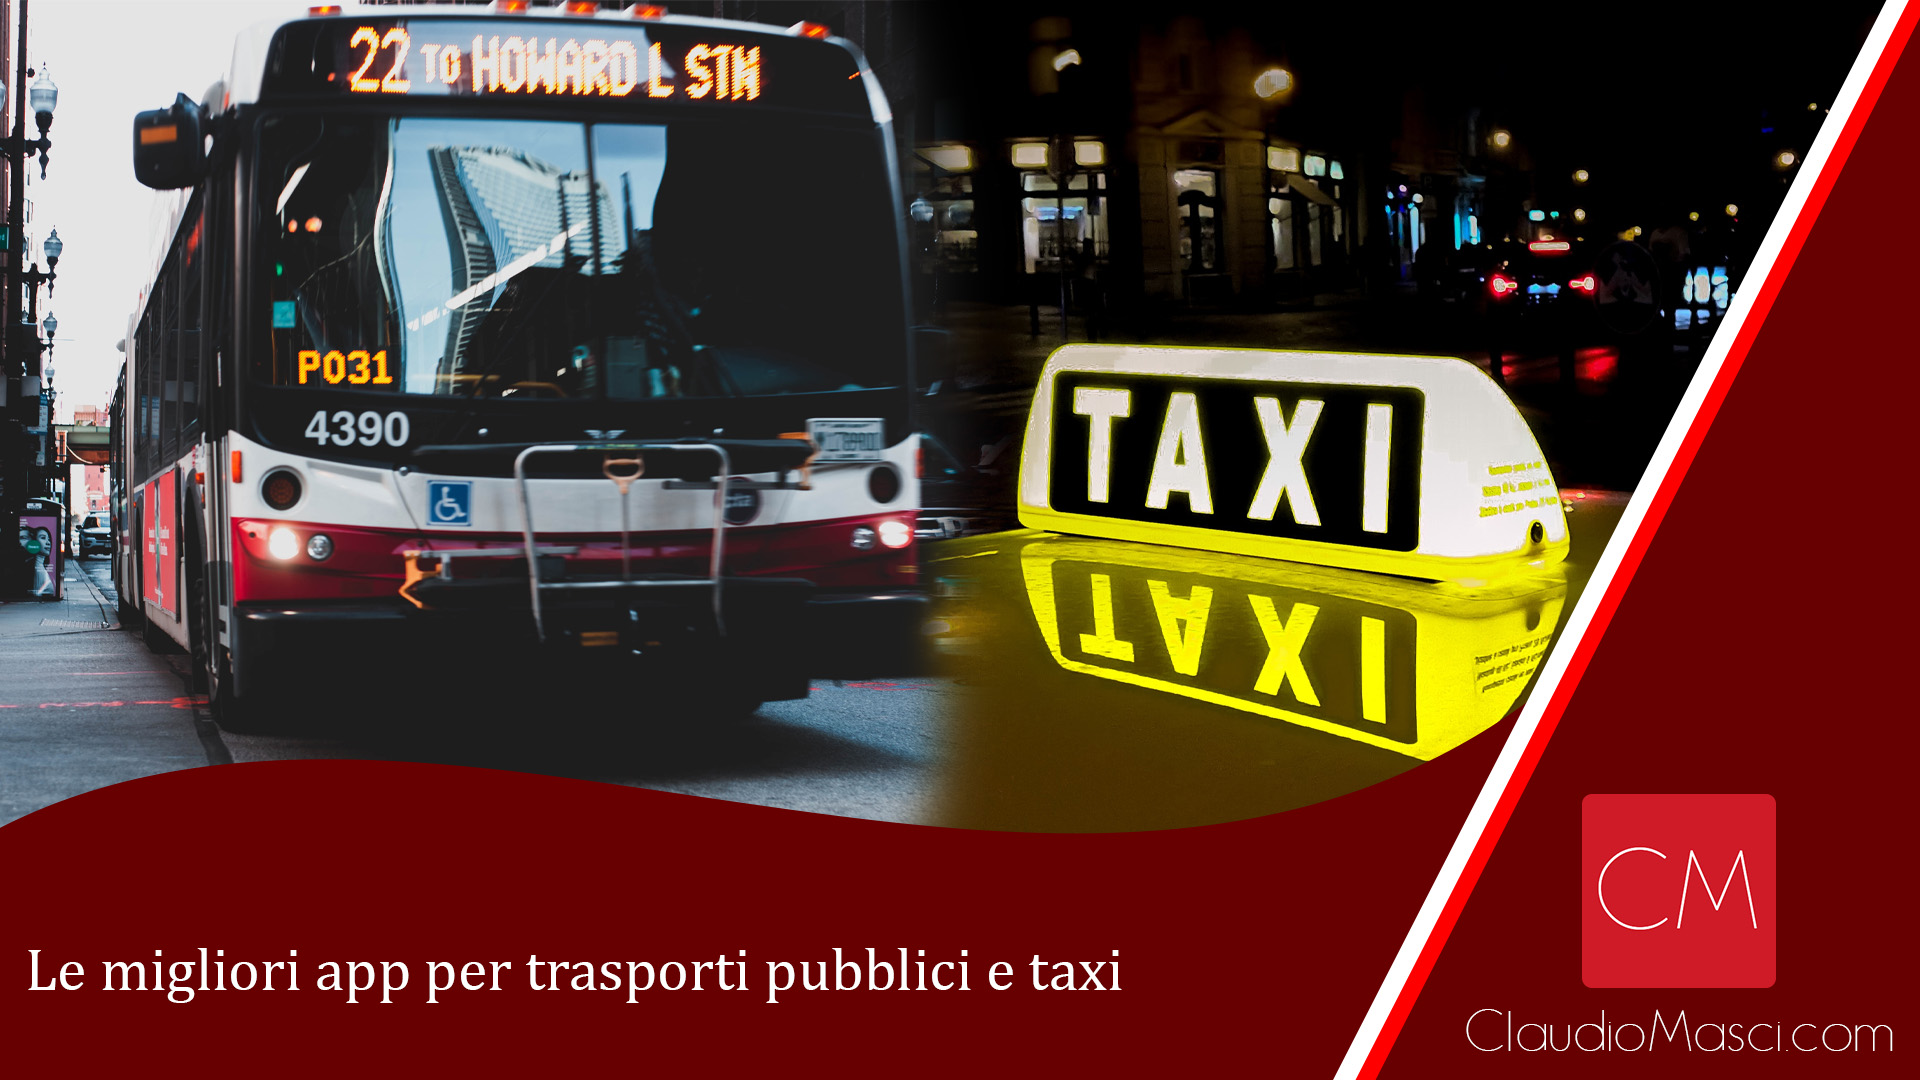 Le migliori app per trasporti pubblici e taxi